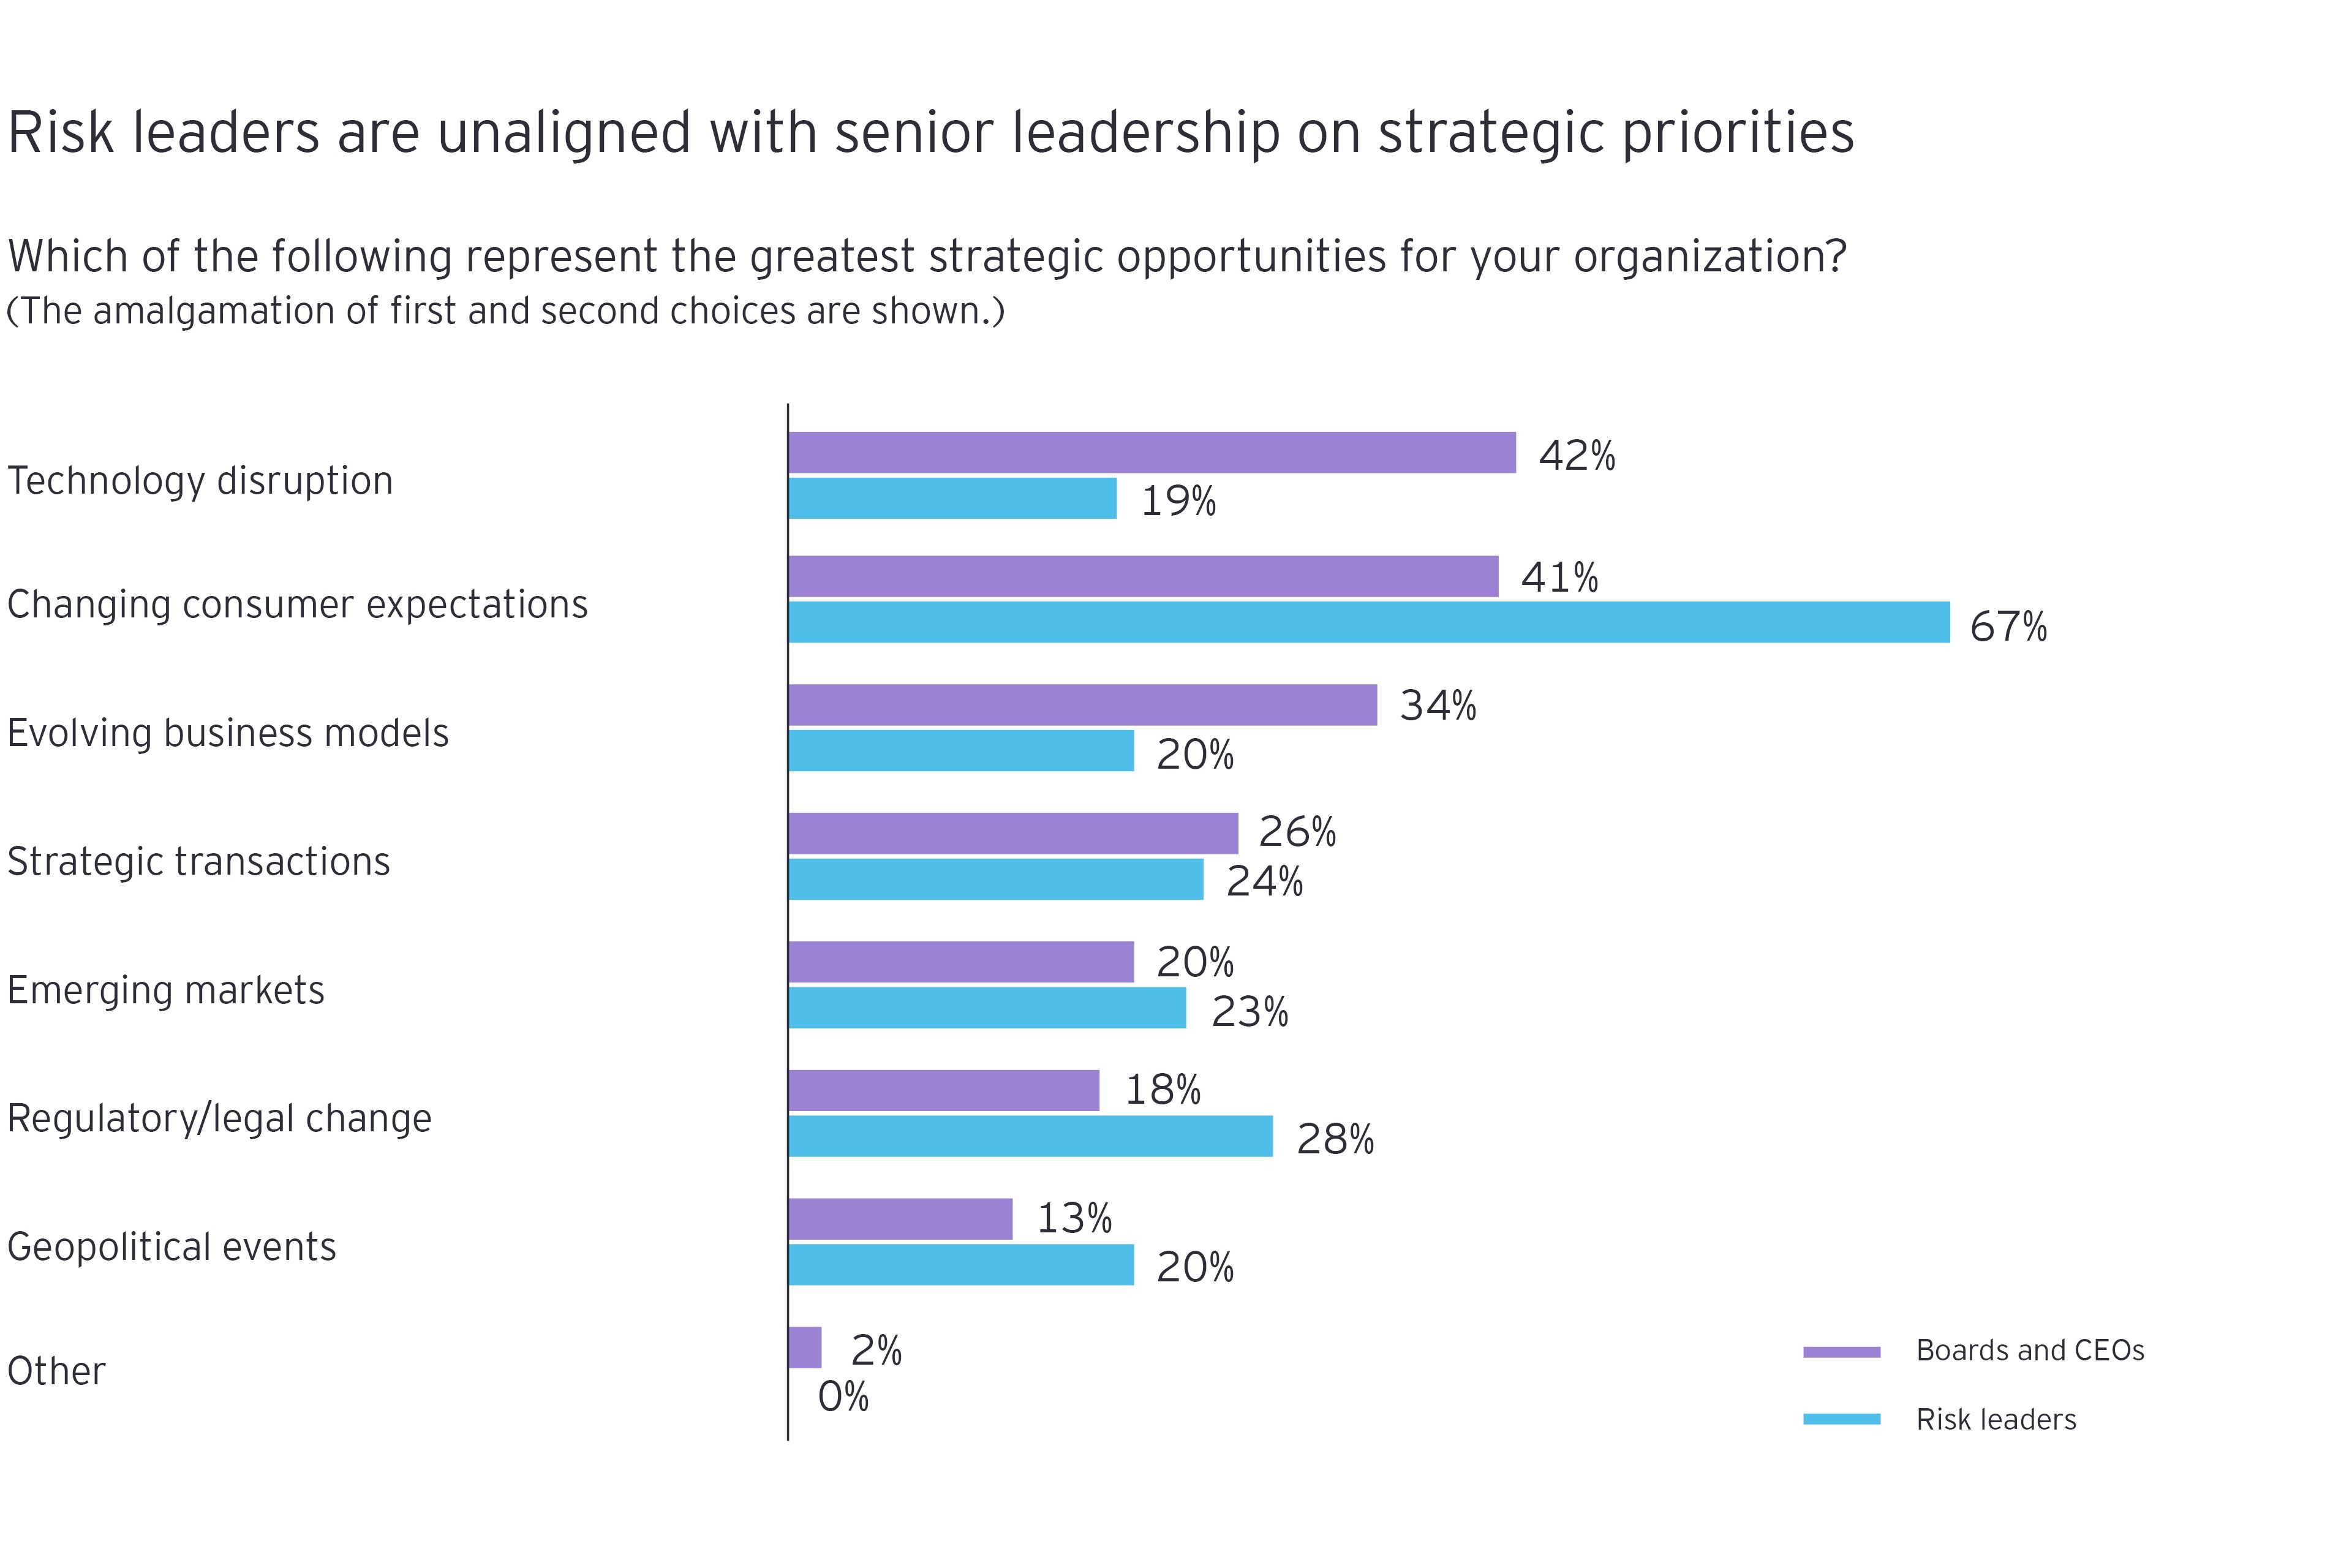 Gráfico que muestra la diferencia en las respuestas entre los directores de riesgo y el liderazgo sénior a "¿Cuáles de las siguientes representan las mayores oportunidades estratégicas para su organización?"